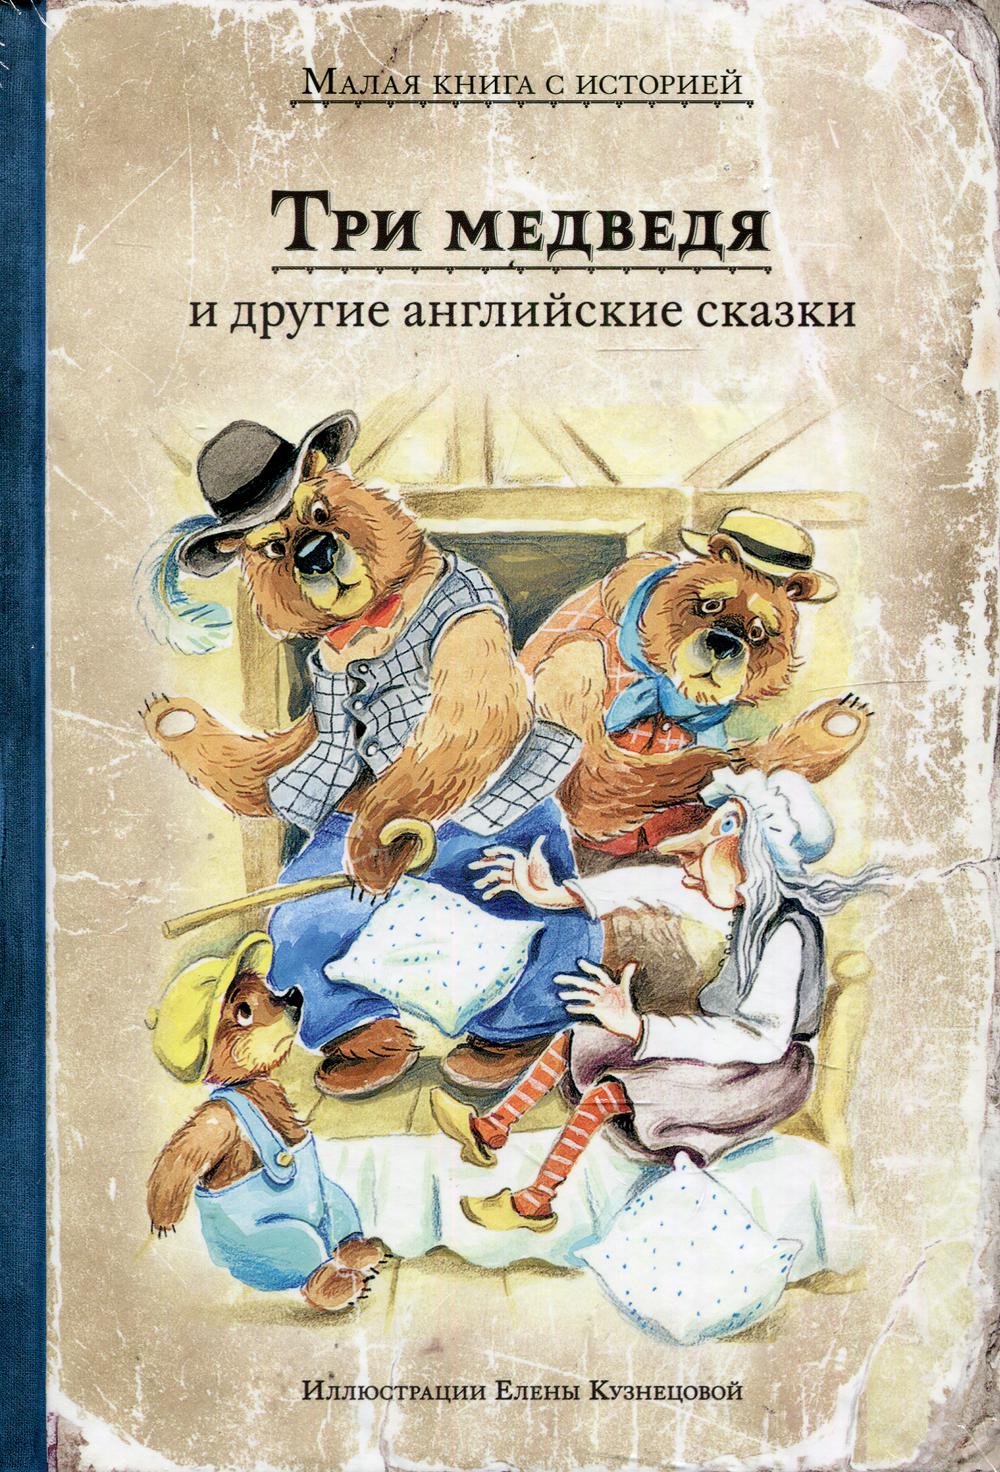 фото Книга "три медведя" и другие английские сказки ид мещерякова